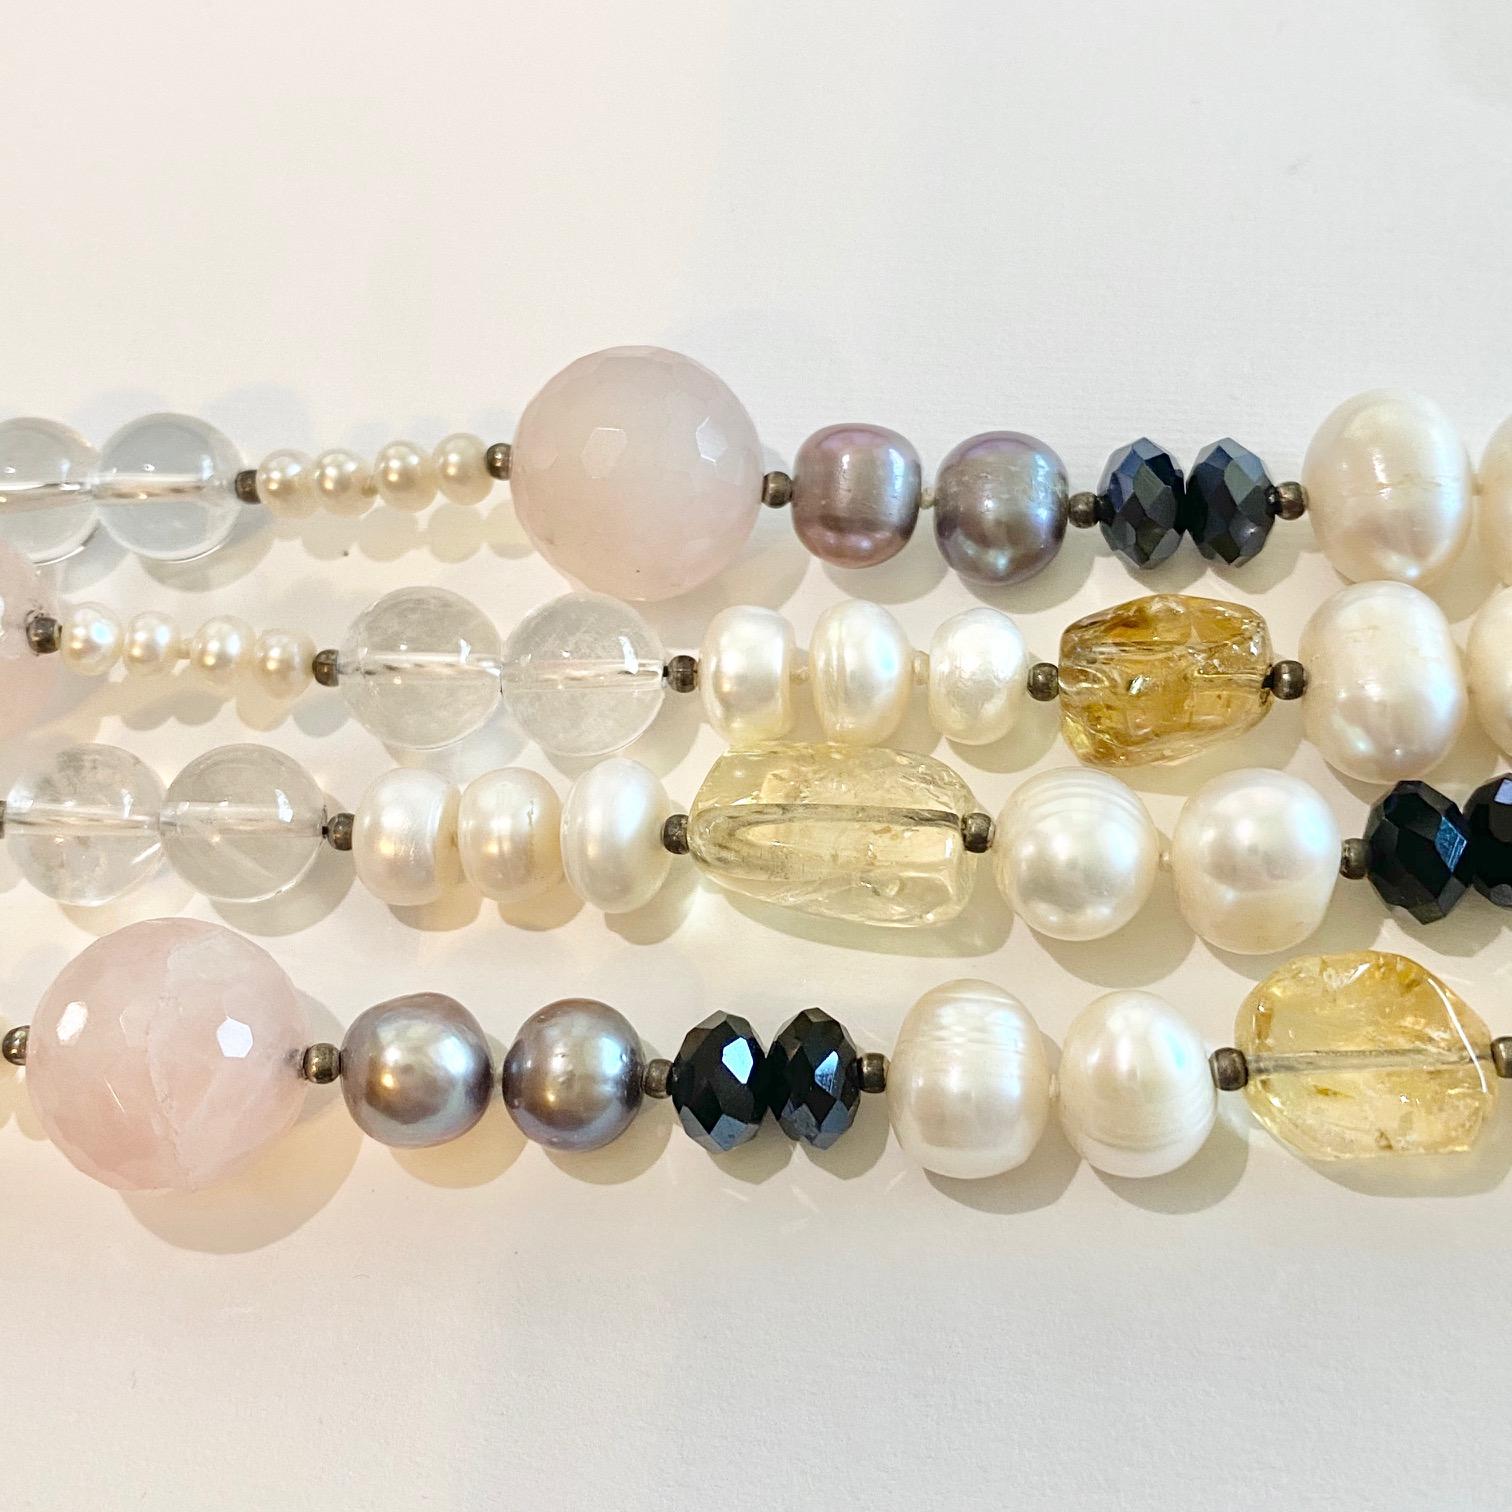 Diese Halskette aus echten Perlen und Rosenquarz ist absolut einzigartig und wunderschön! Er besteht aus natürlichen Zuchtperlen, Rosenquarz, Bergkristallquarz, Citrin und schwarzem Zirkon sowie kleinen Perlen aus Sterlingsilber. Alle Steine sind